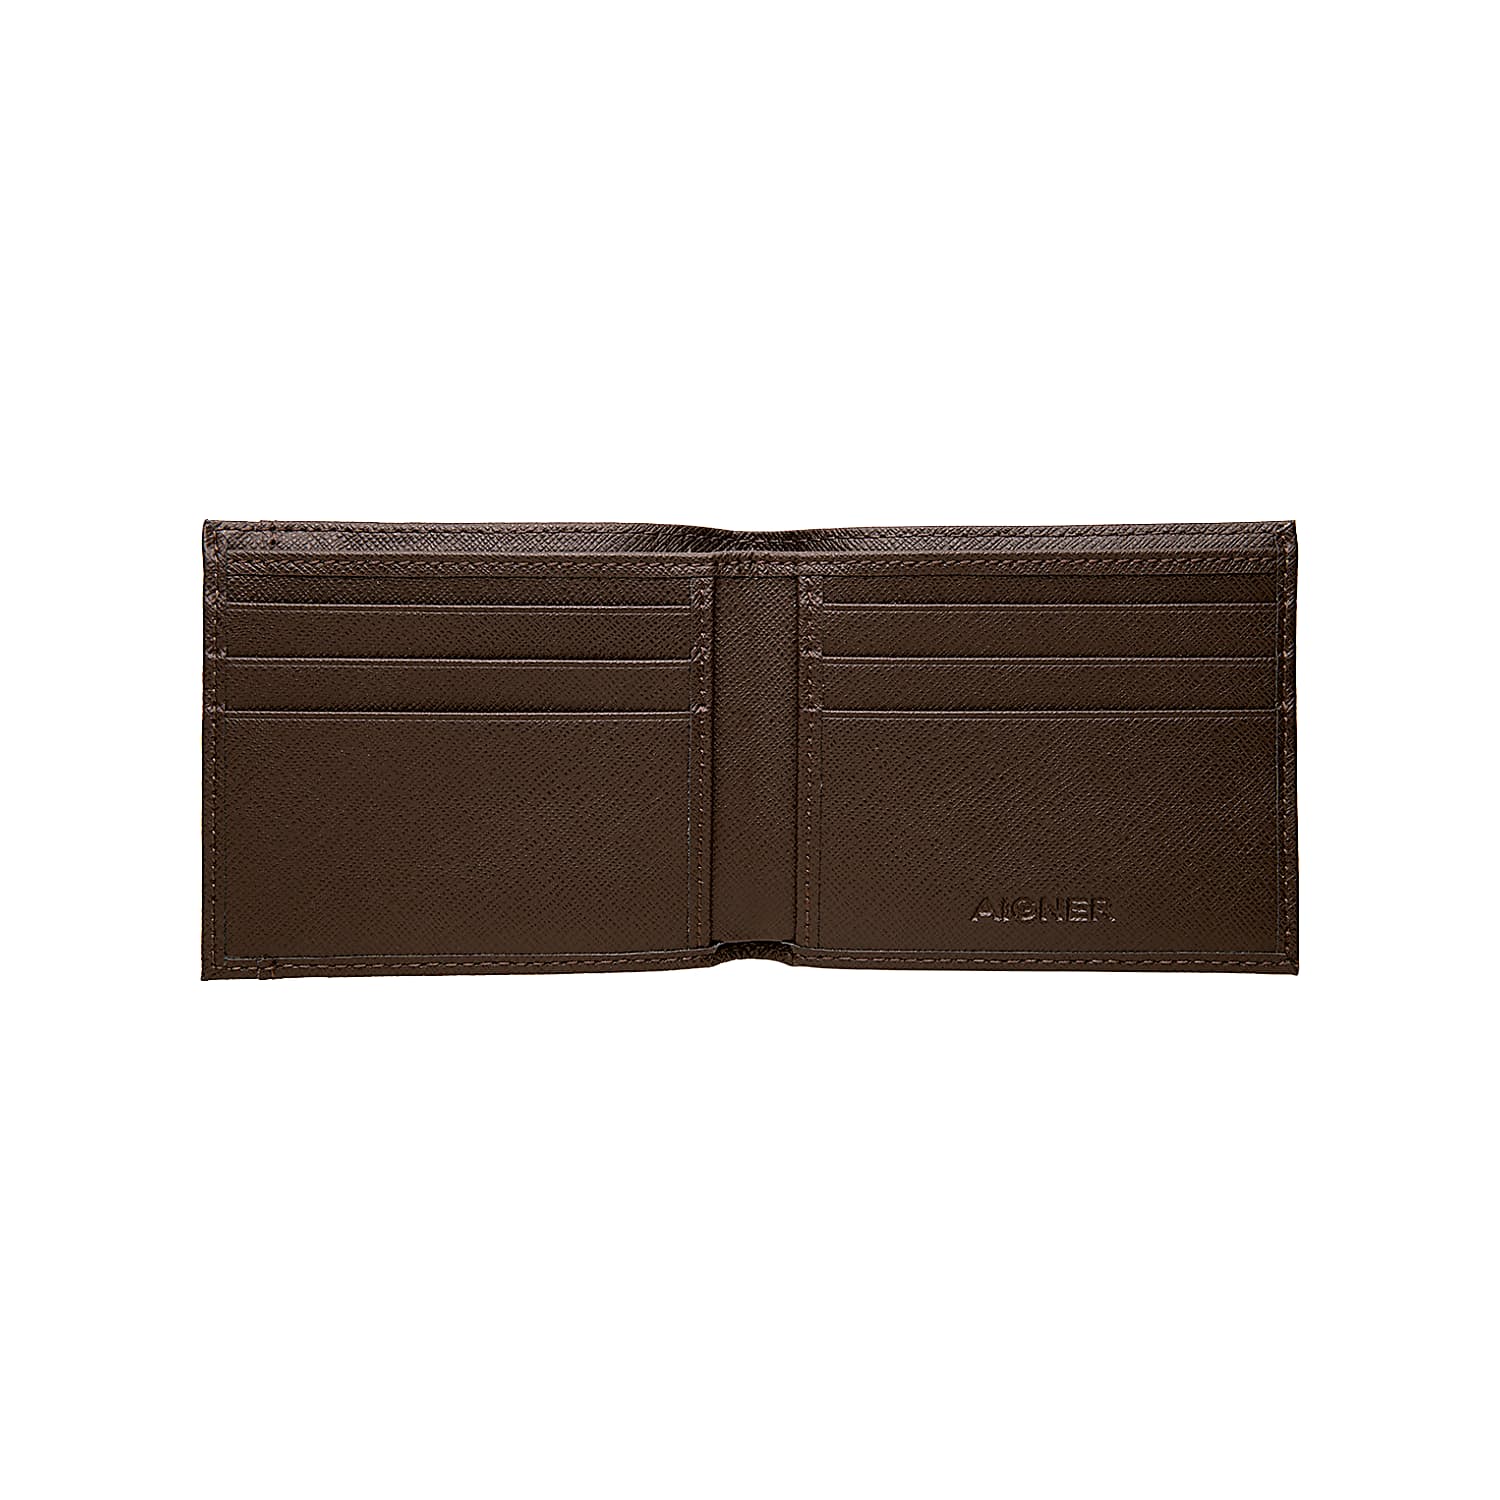 Saffiano wallet